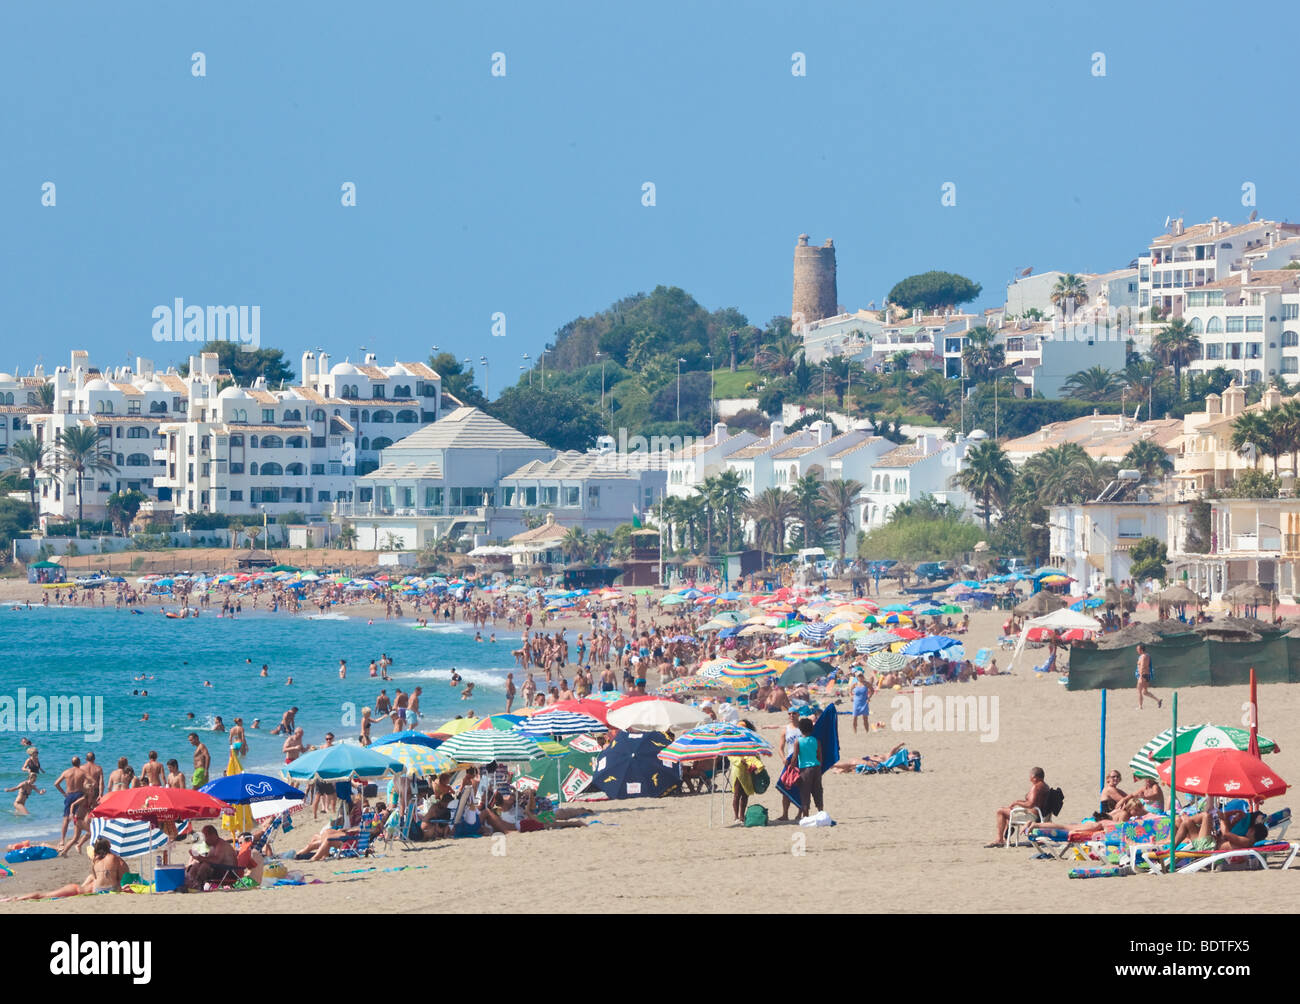 Butibamba beach at La Cala de Mijas, Costa del Sol, Malaga Province, Spain. Stock Photo